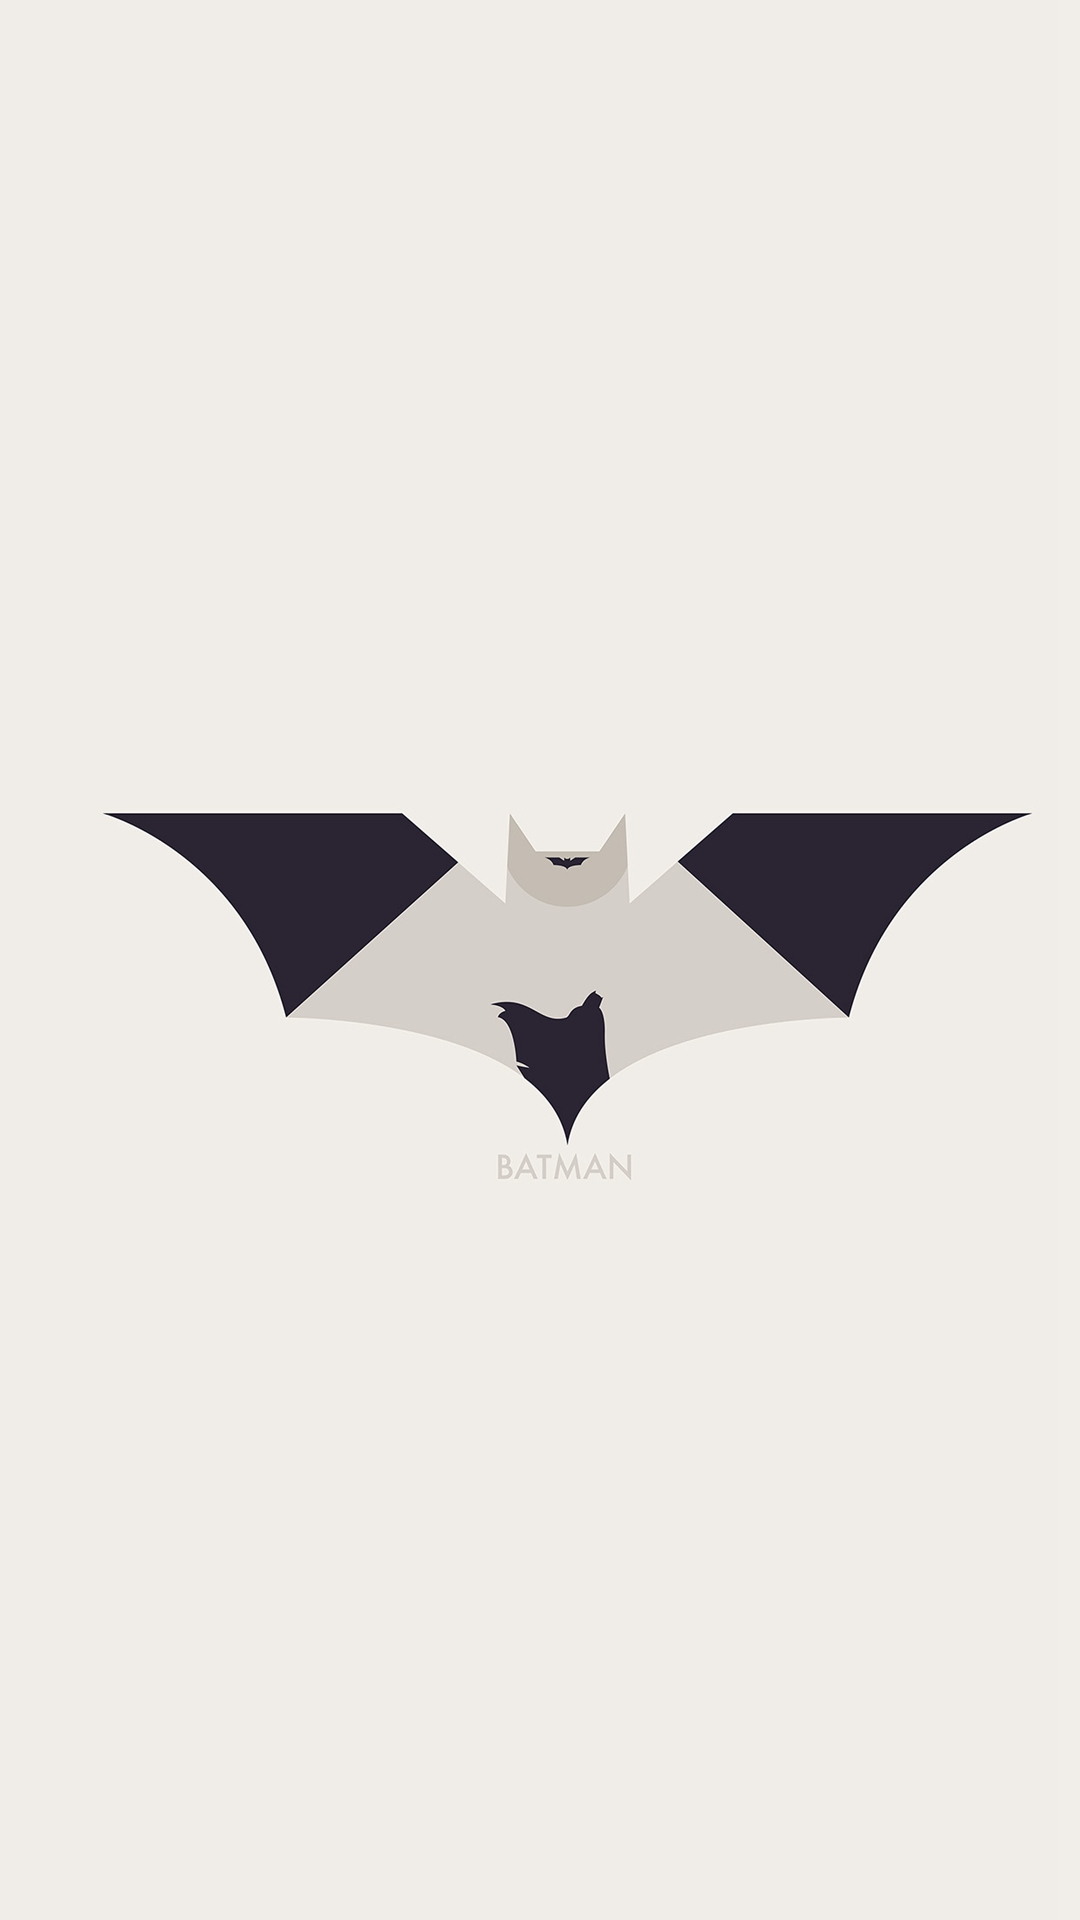 Batman logo HD wallpapers  Pxfuel